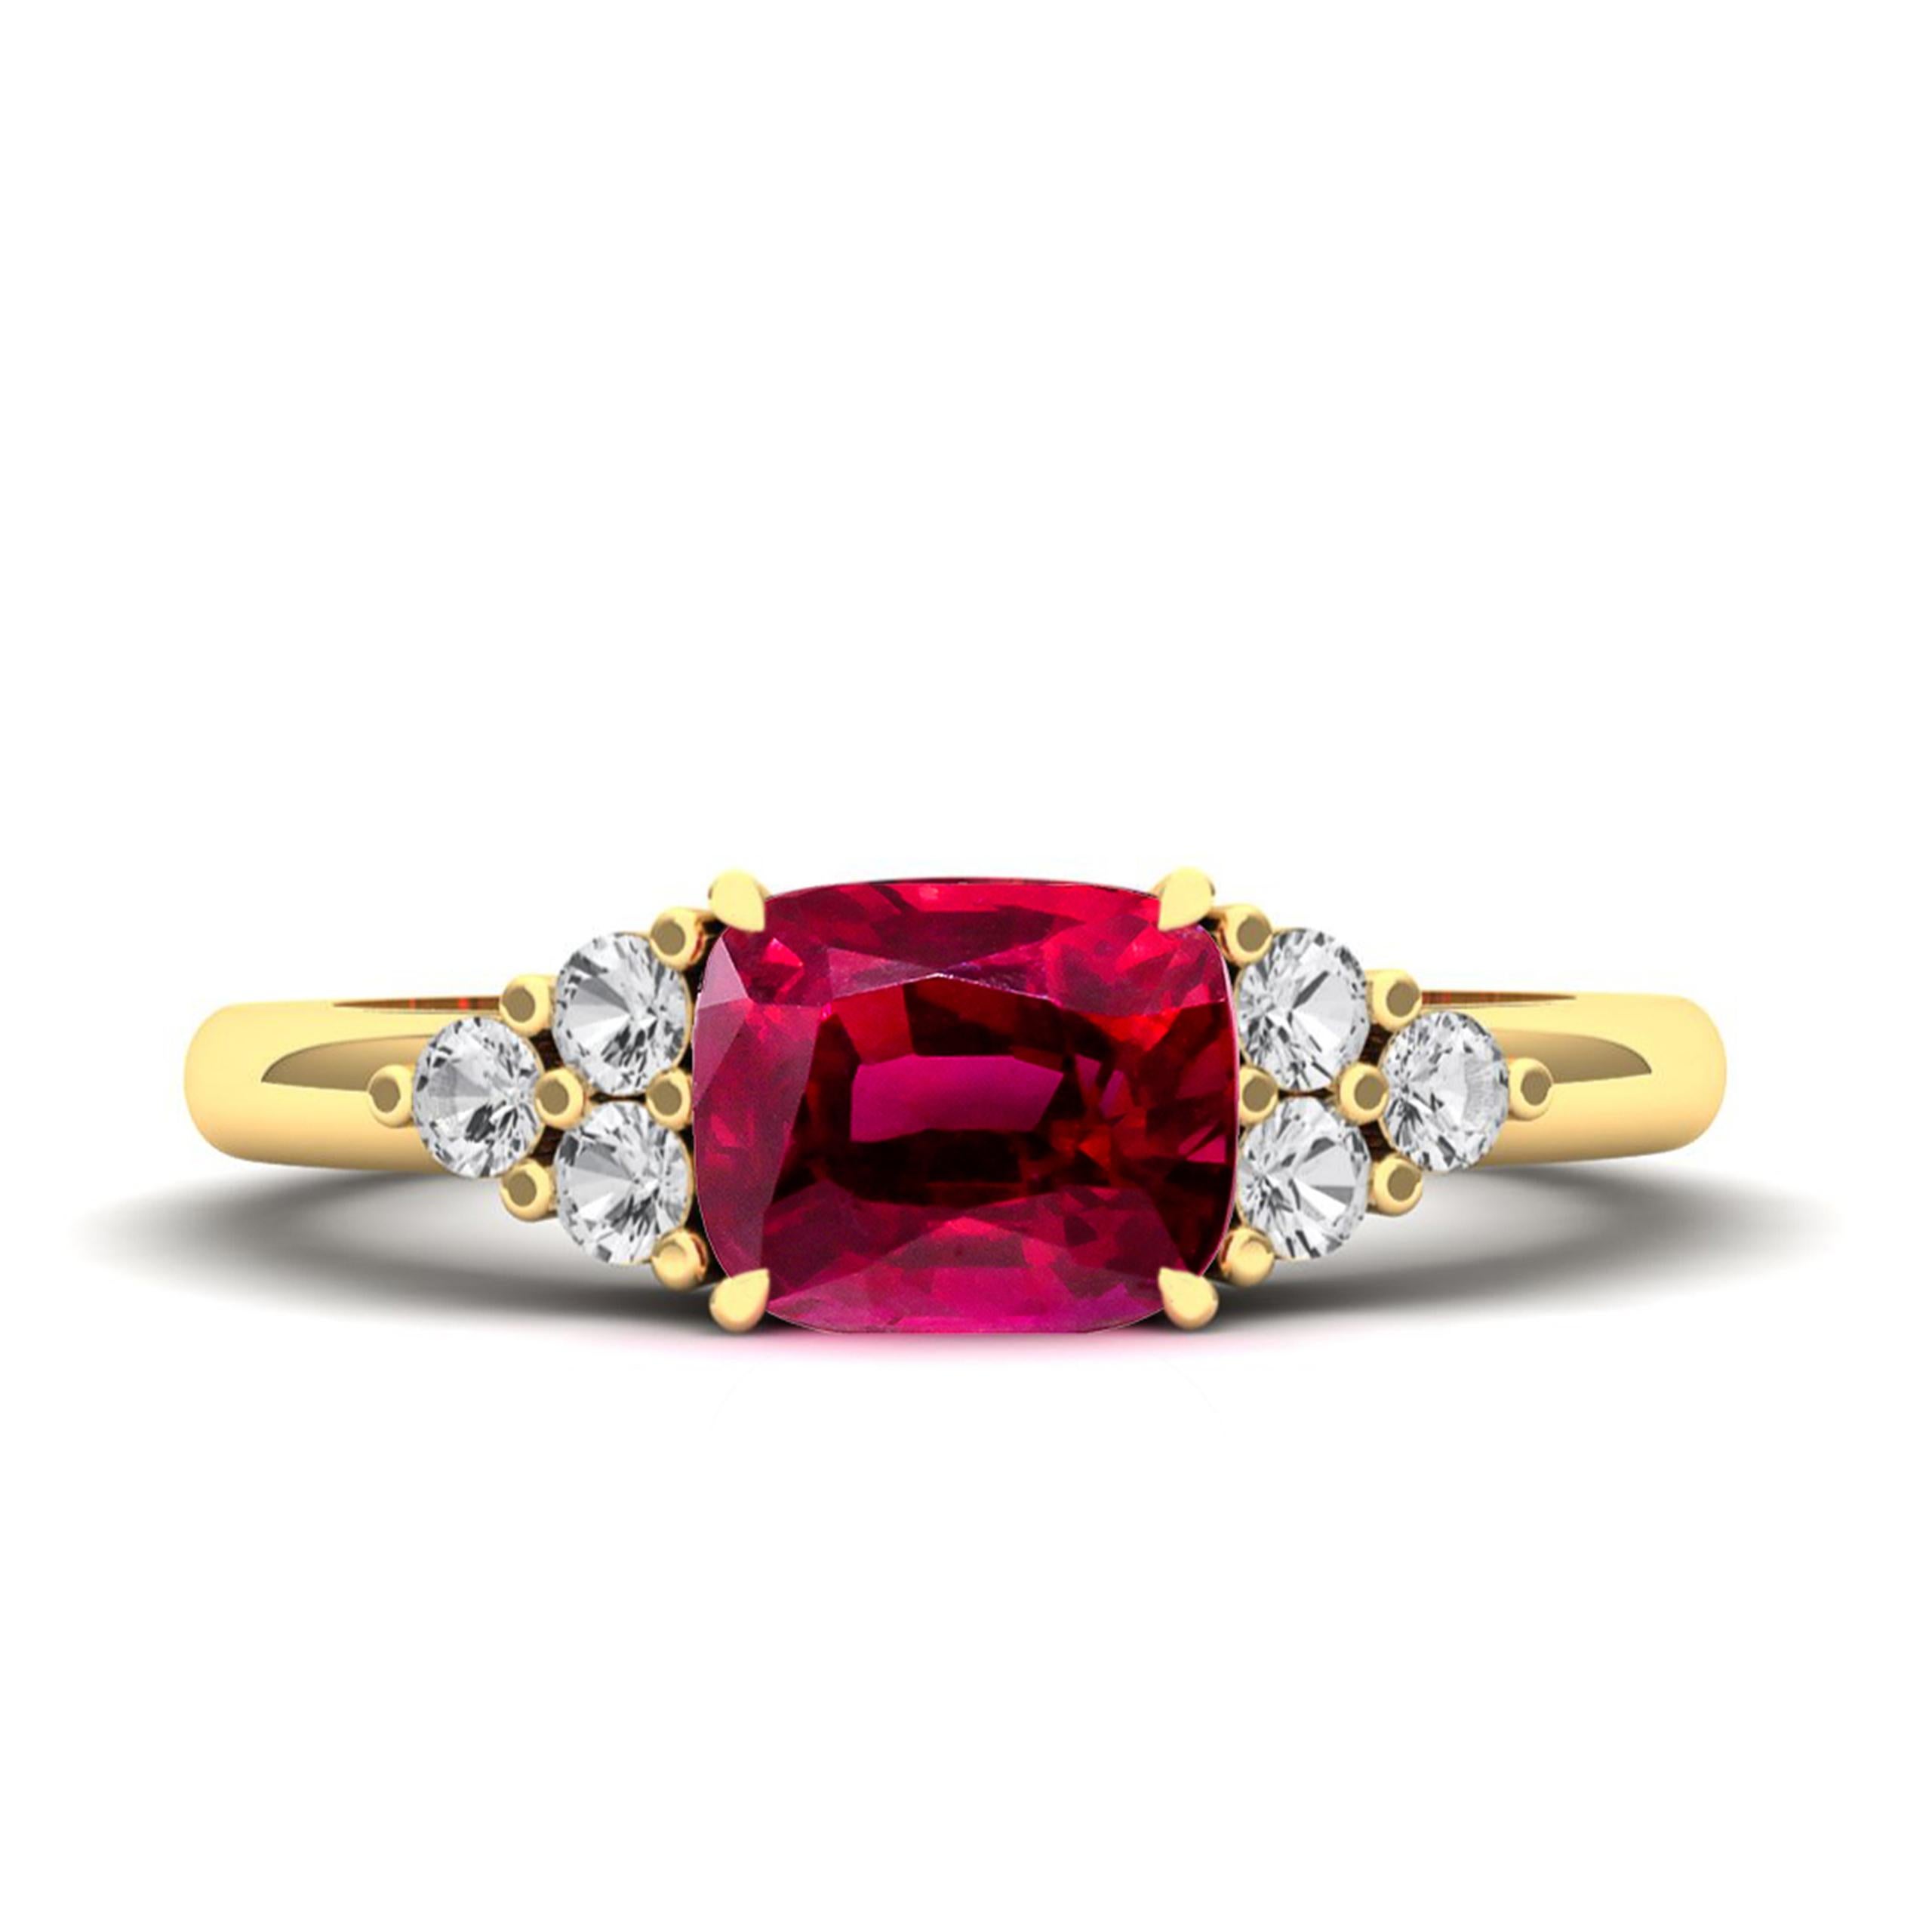 Erleben Sie zeitlose Eleganz mit unserem maßgefertigten Ring mit einem natürlichen, unbehandelten Rubin von 1,55 Karat. Dieses bezaubernde Schmuckstück ist mit konfliktfreien Diamanten besetzt, die in einem seitlichen Cluster-Design gefasst sind.